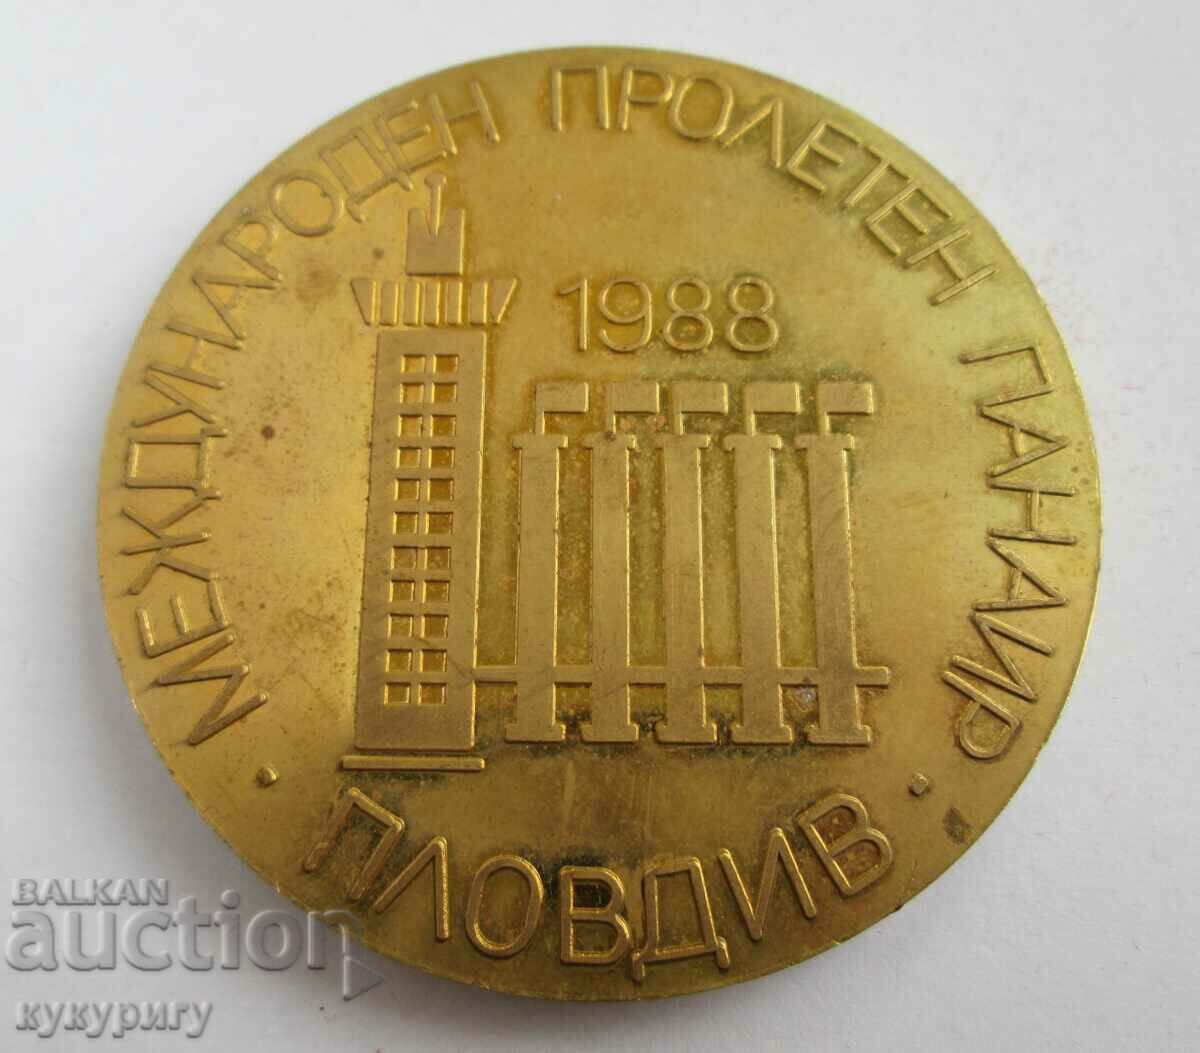 Placă cu medalie de onoare Târgul de primăvară Plovdiv 1988